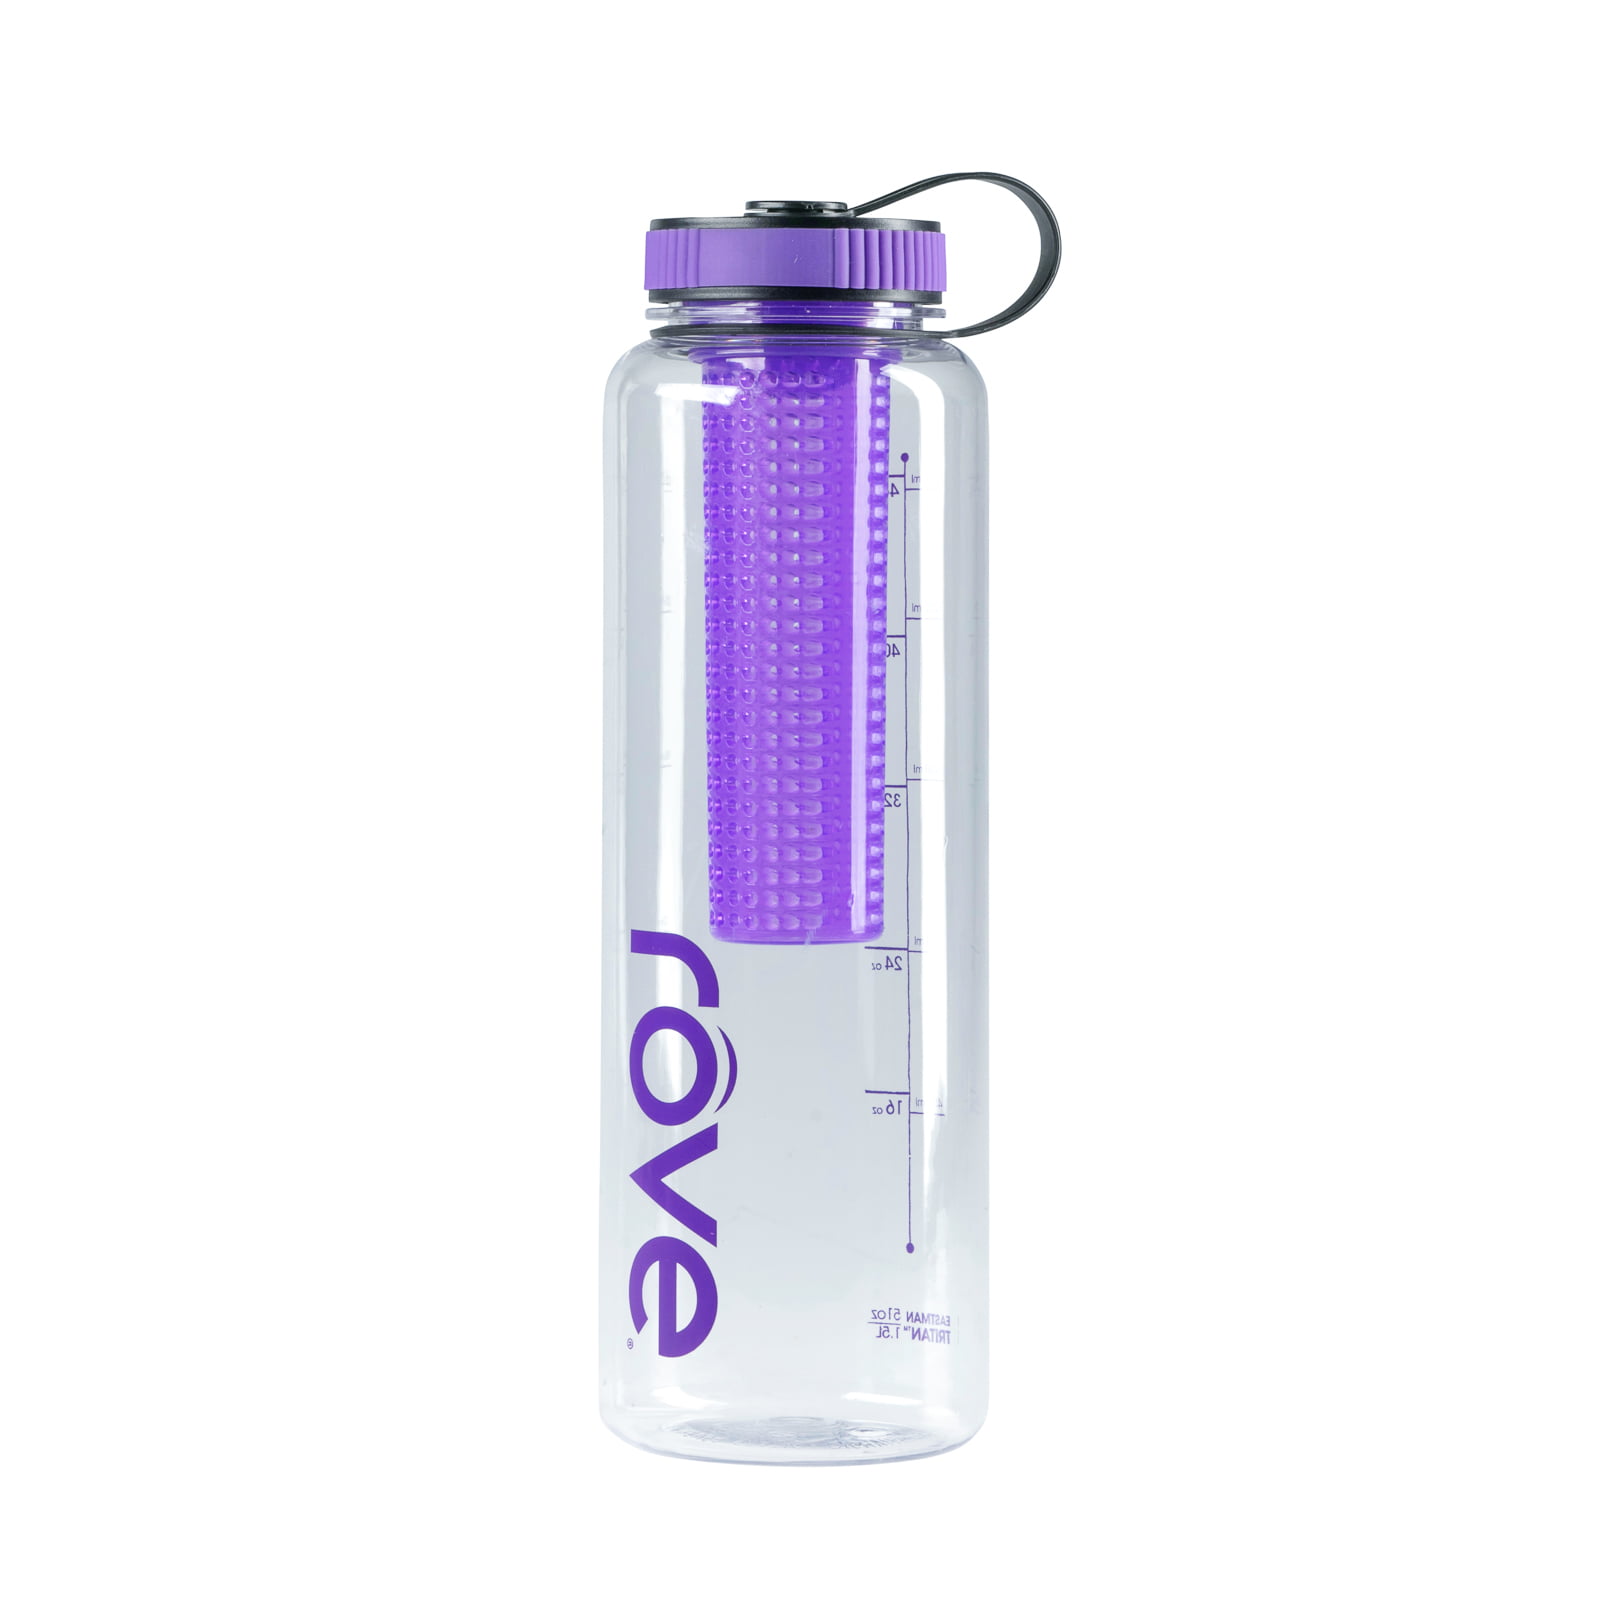 rove water bottle speaker